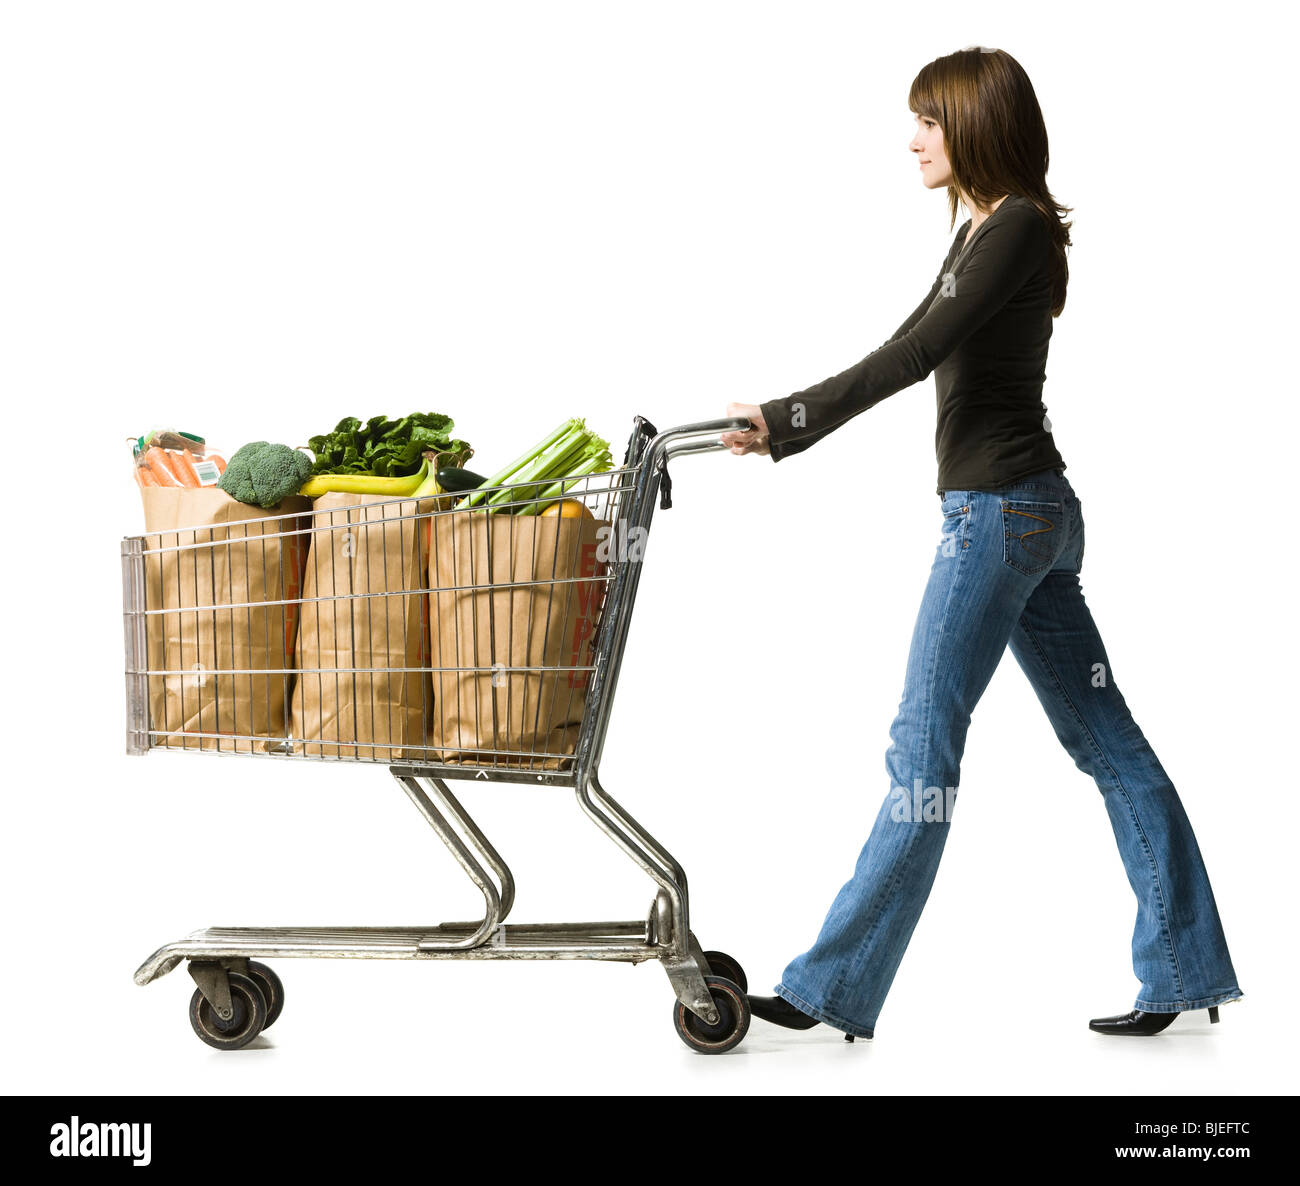 woman pushing a shopping cart Stock Photo